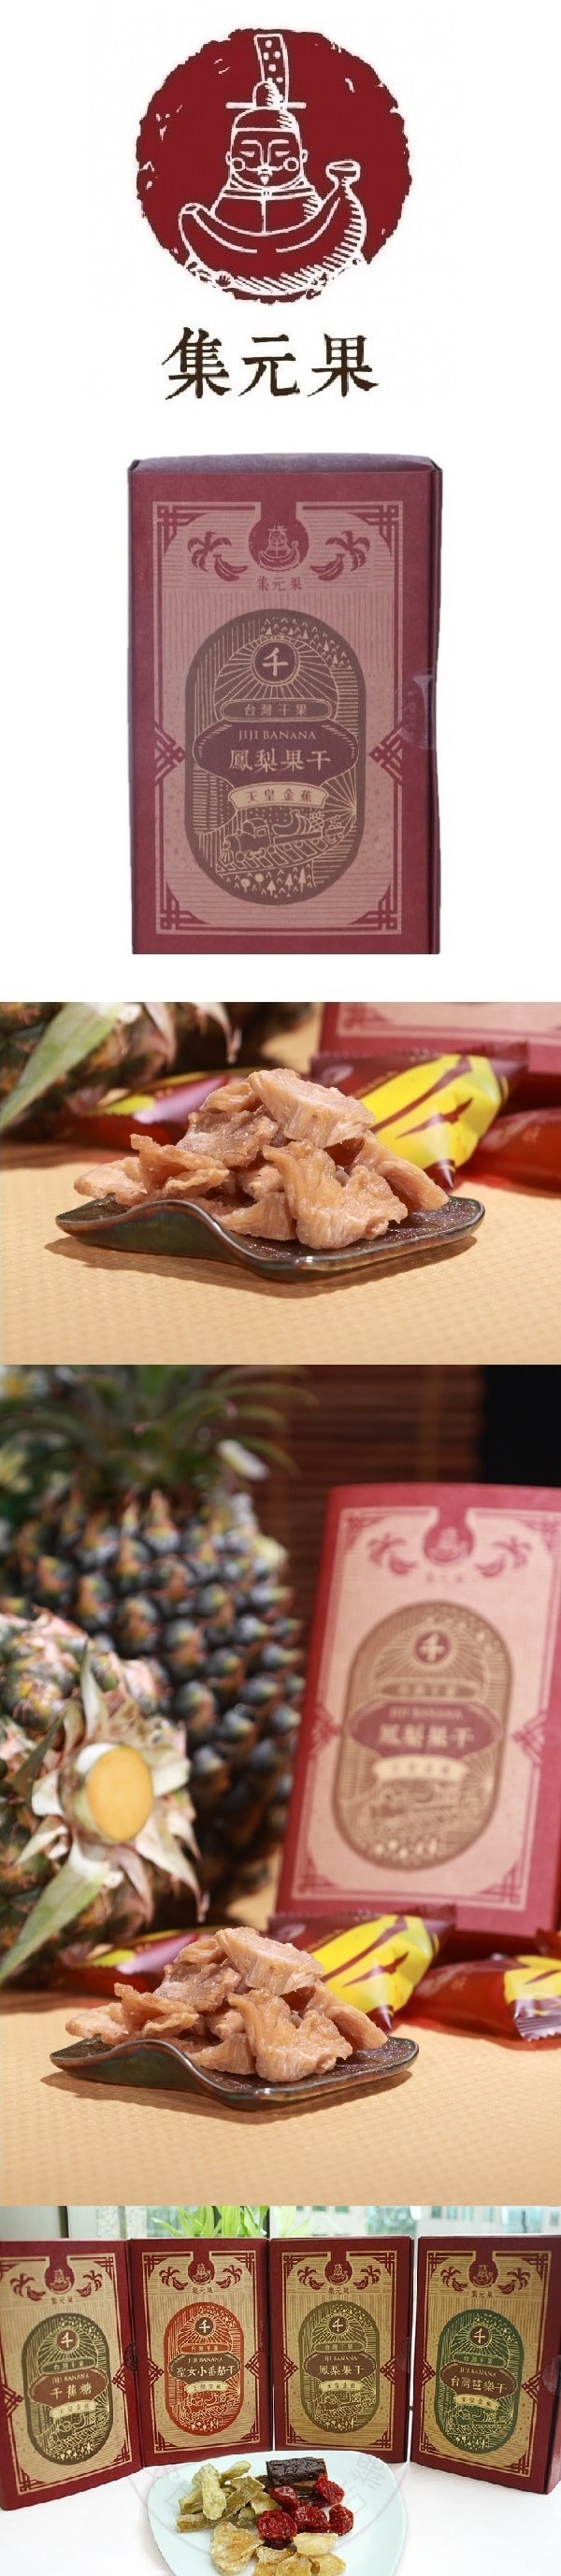 [Taiwan Direct Mail] Jiyuanguo Dried Pineapple 80g/box